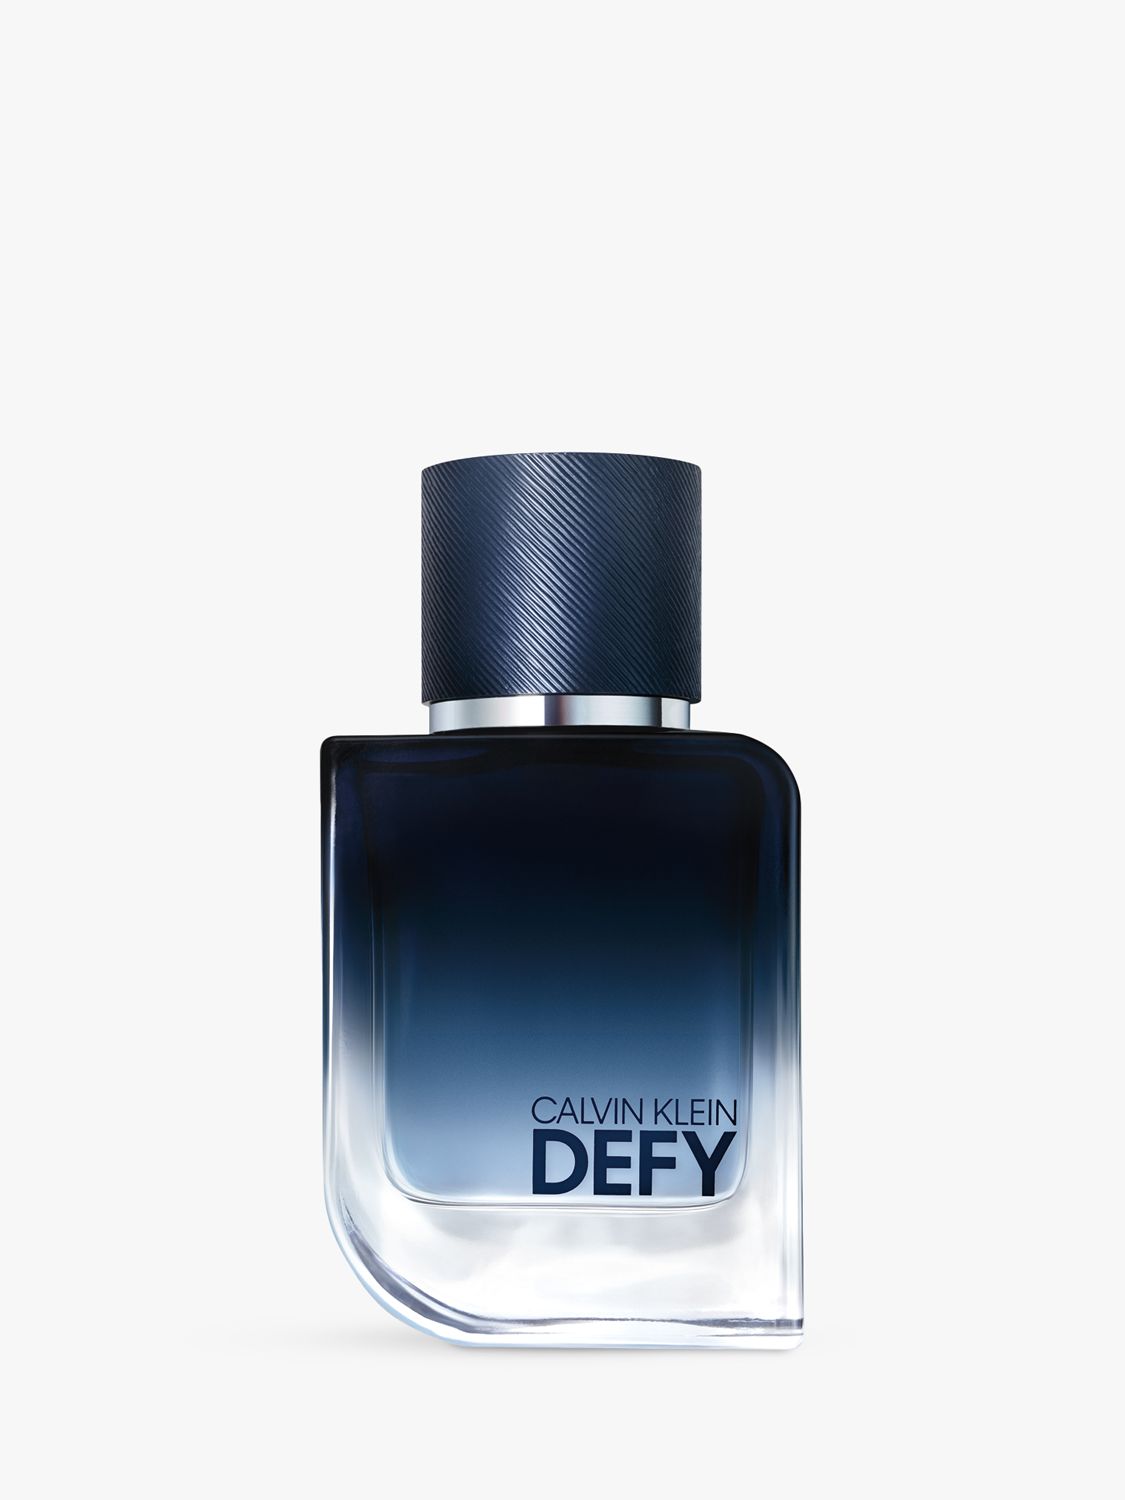 Calvin Klein Defy Eau de Parfum, 50ml at John Lewis & Partners